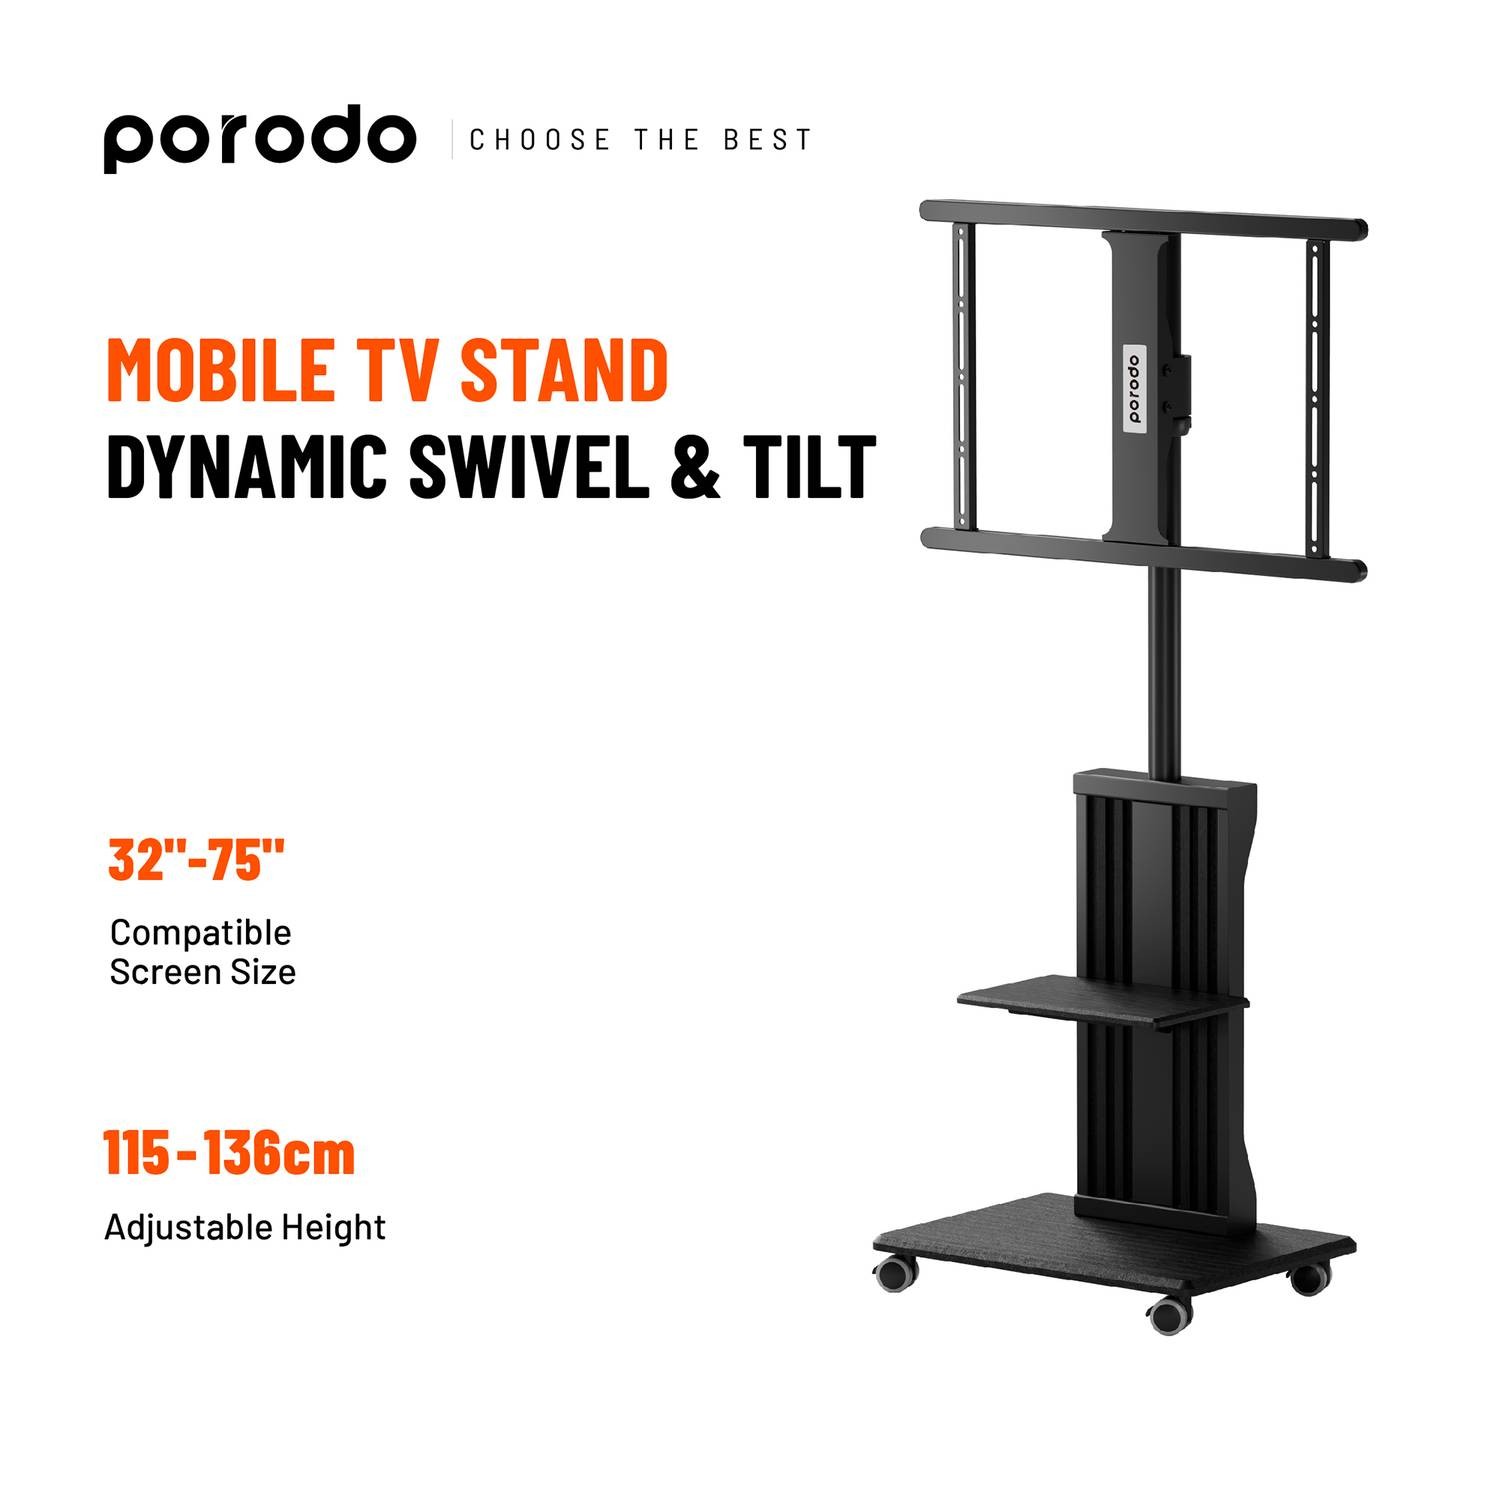 Porodo Mobile TV Stand Dynamic Swivel & Tilt